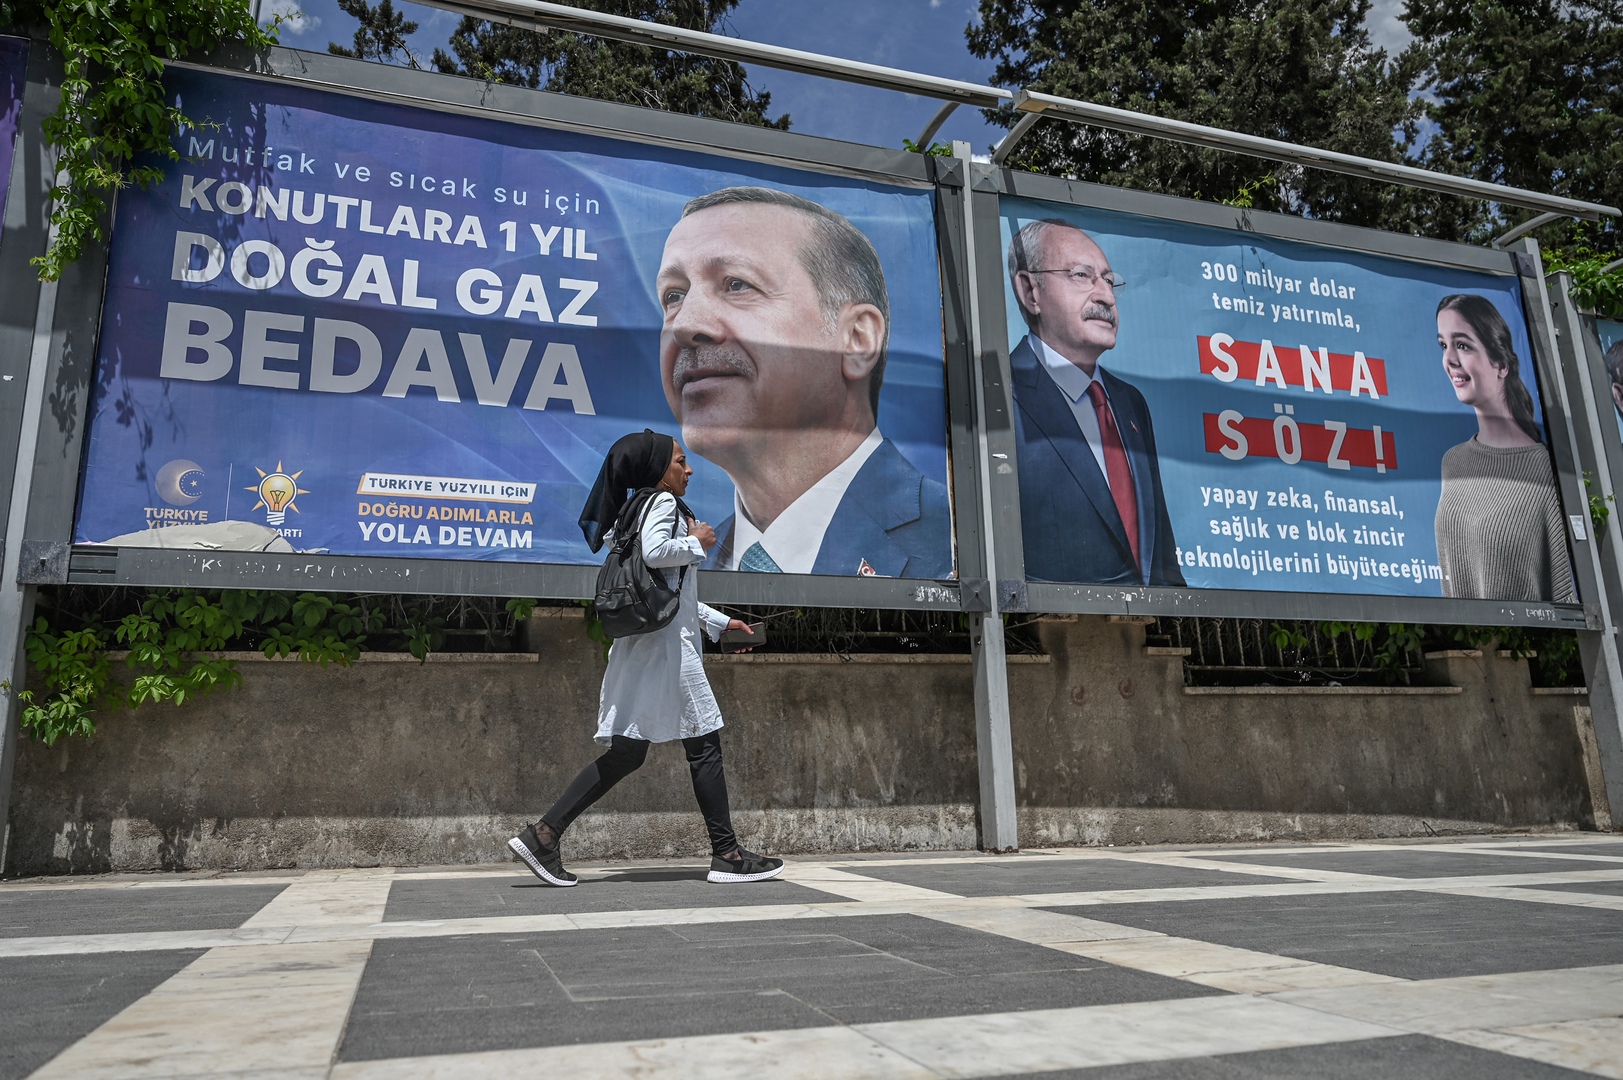 المعارضة التركية تستعد لمعركتها ضد أردوغان في الجولة الثانية من الانتخابات الرئاسية